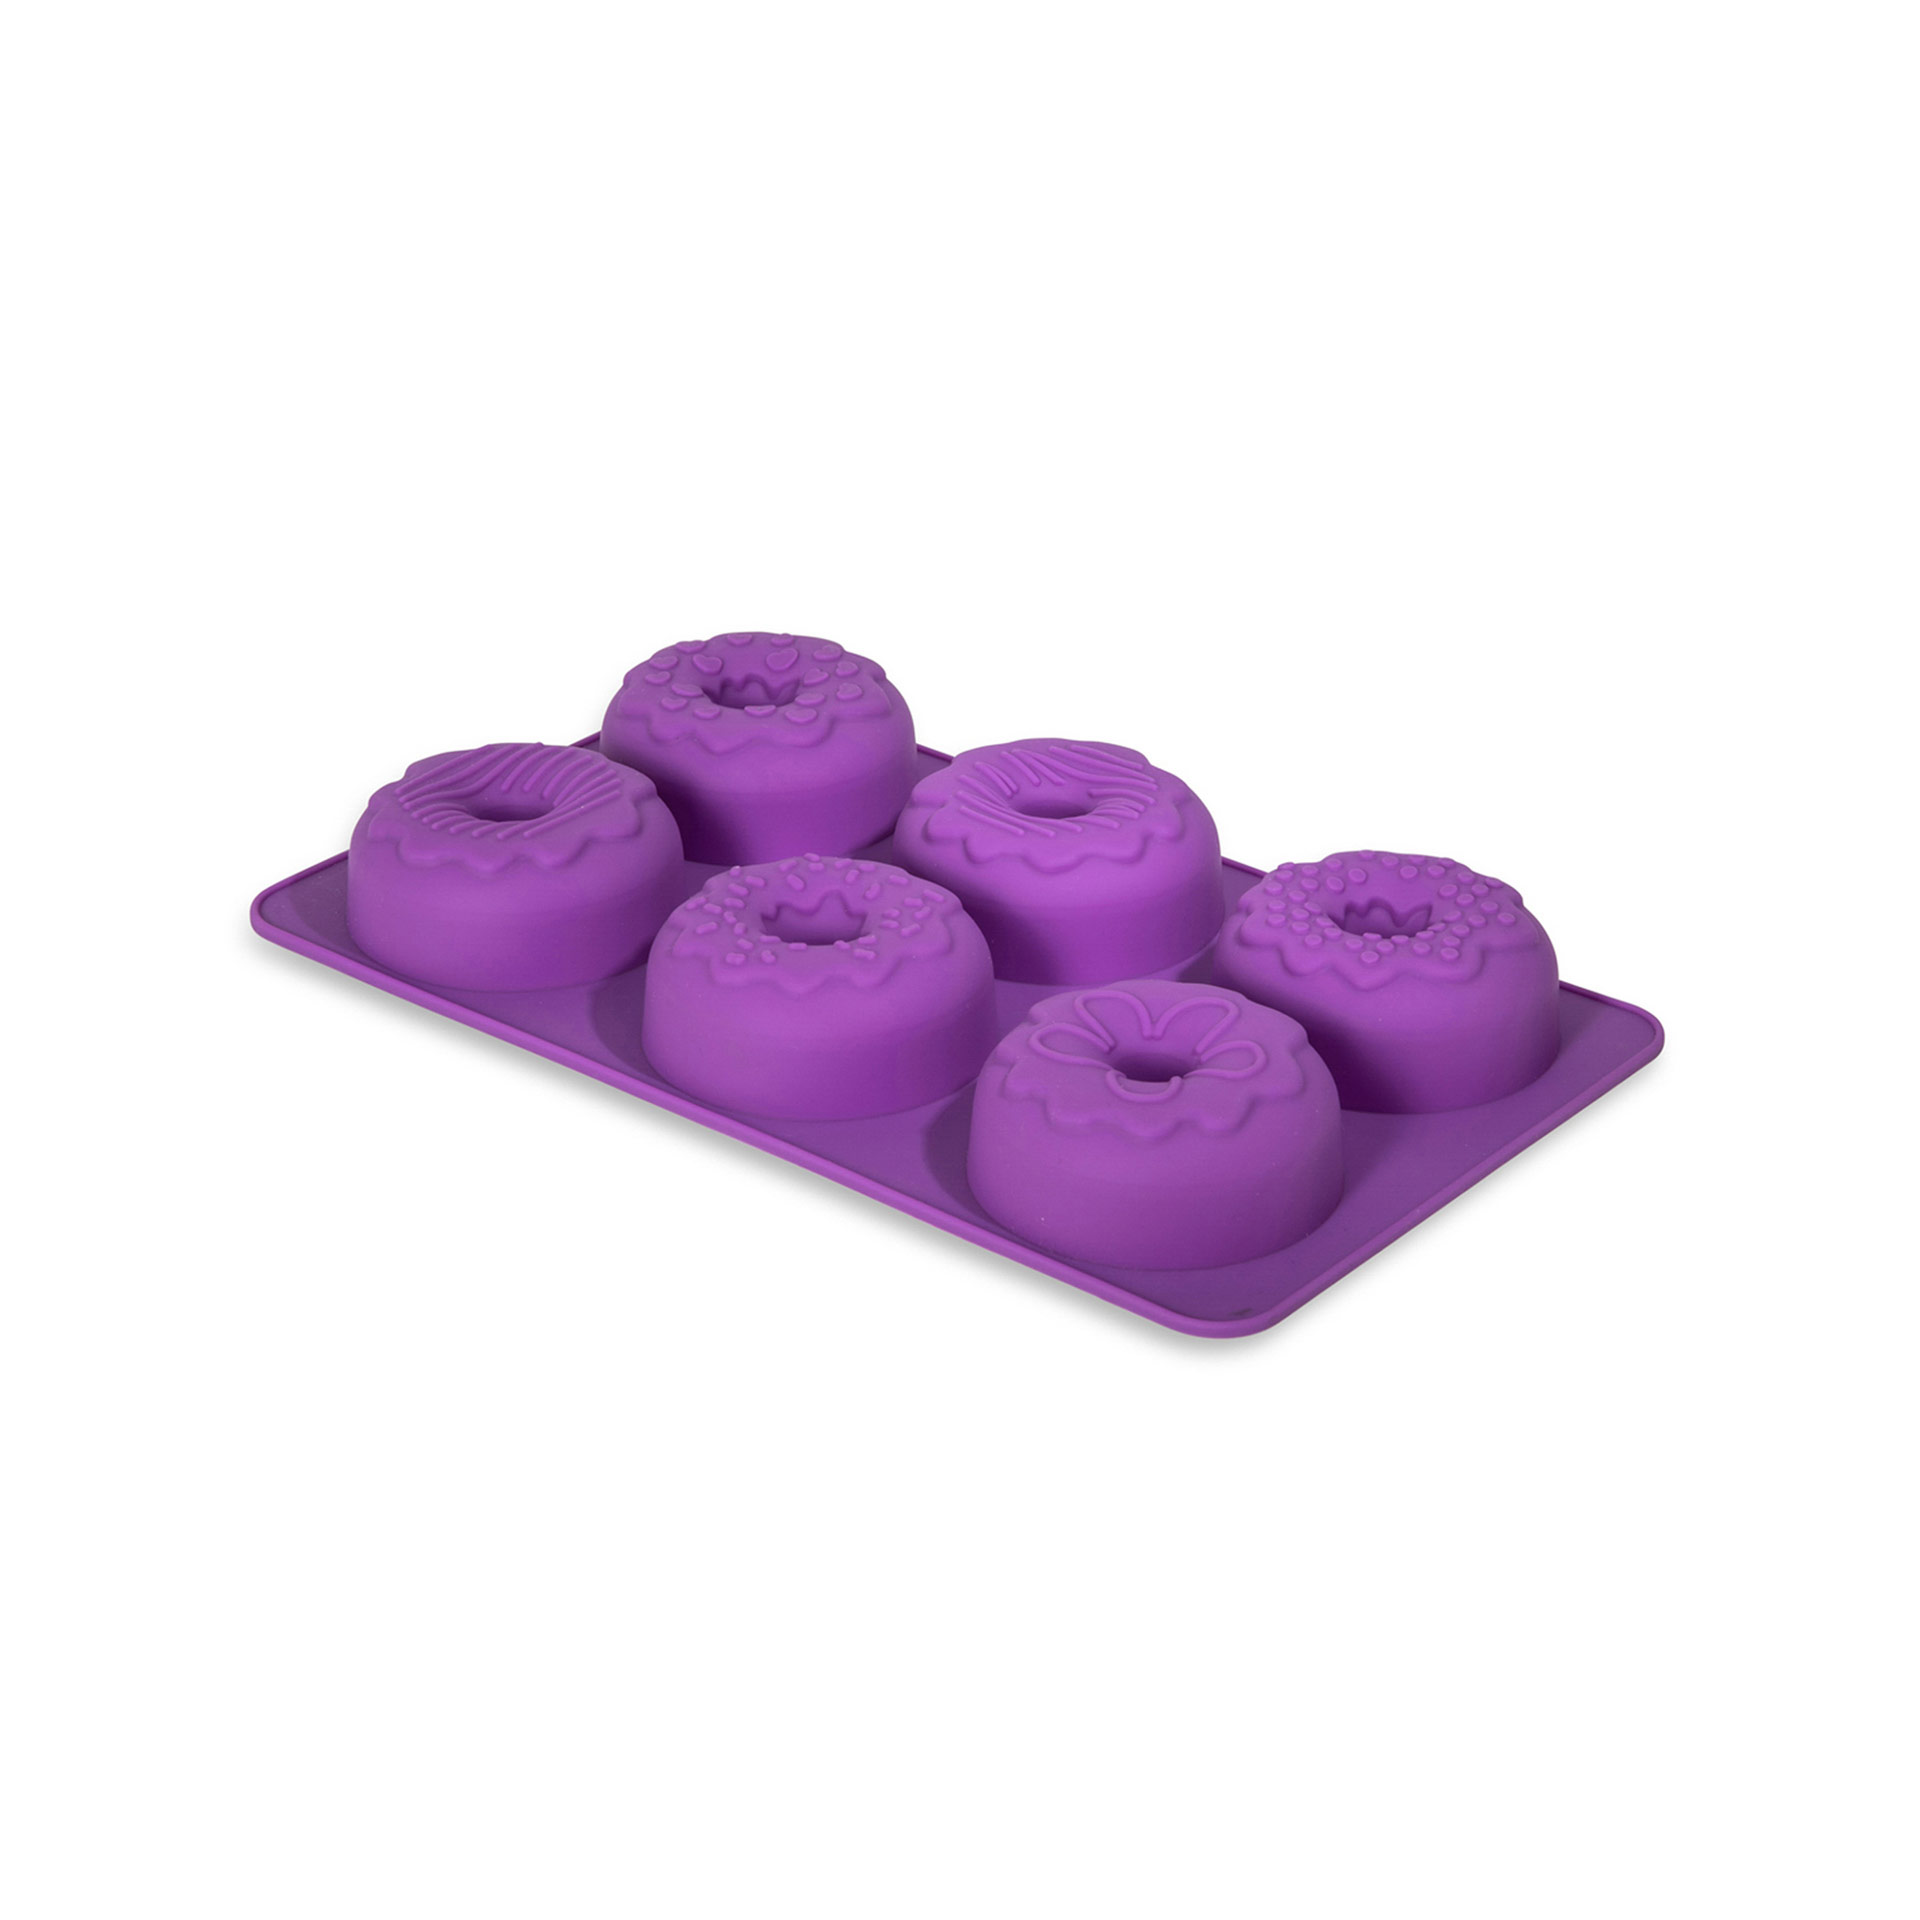 Stampo in silicone per 6 donut con decorazioni, , large